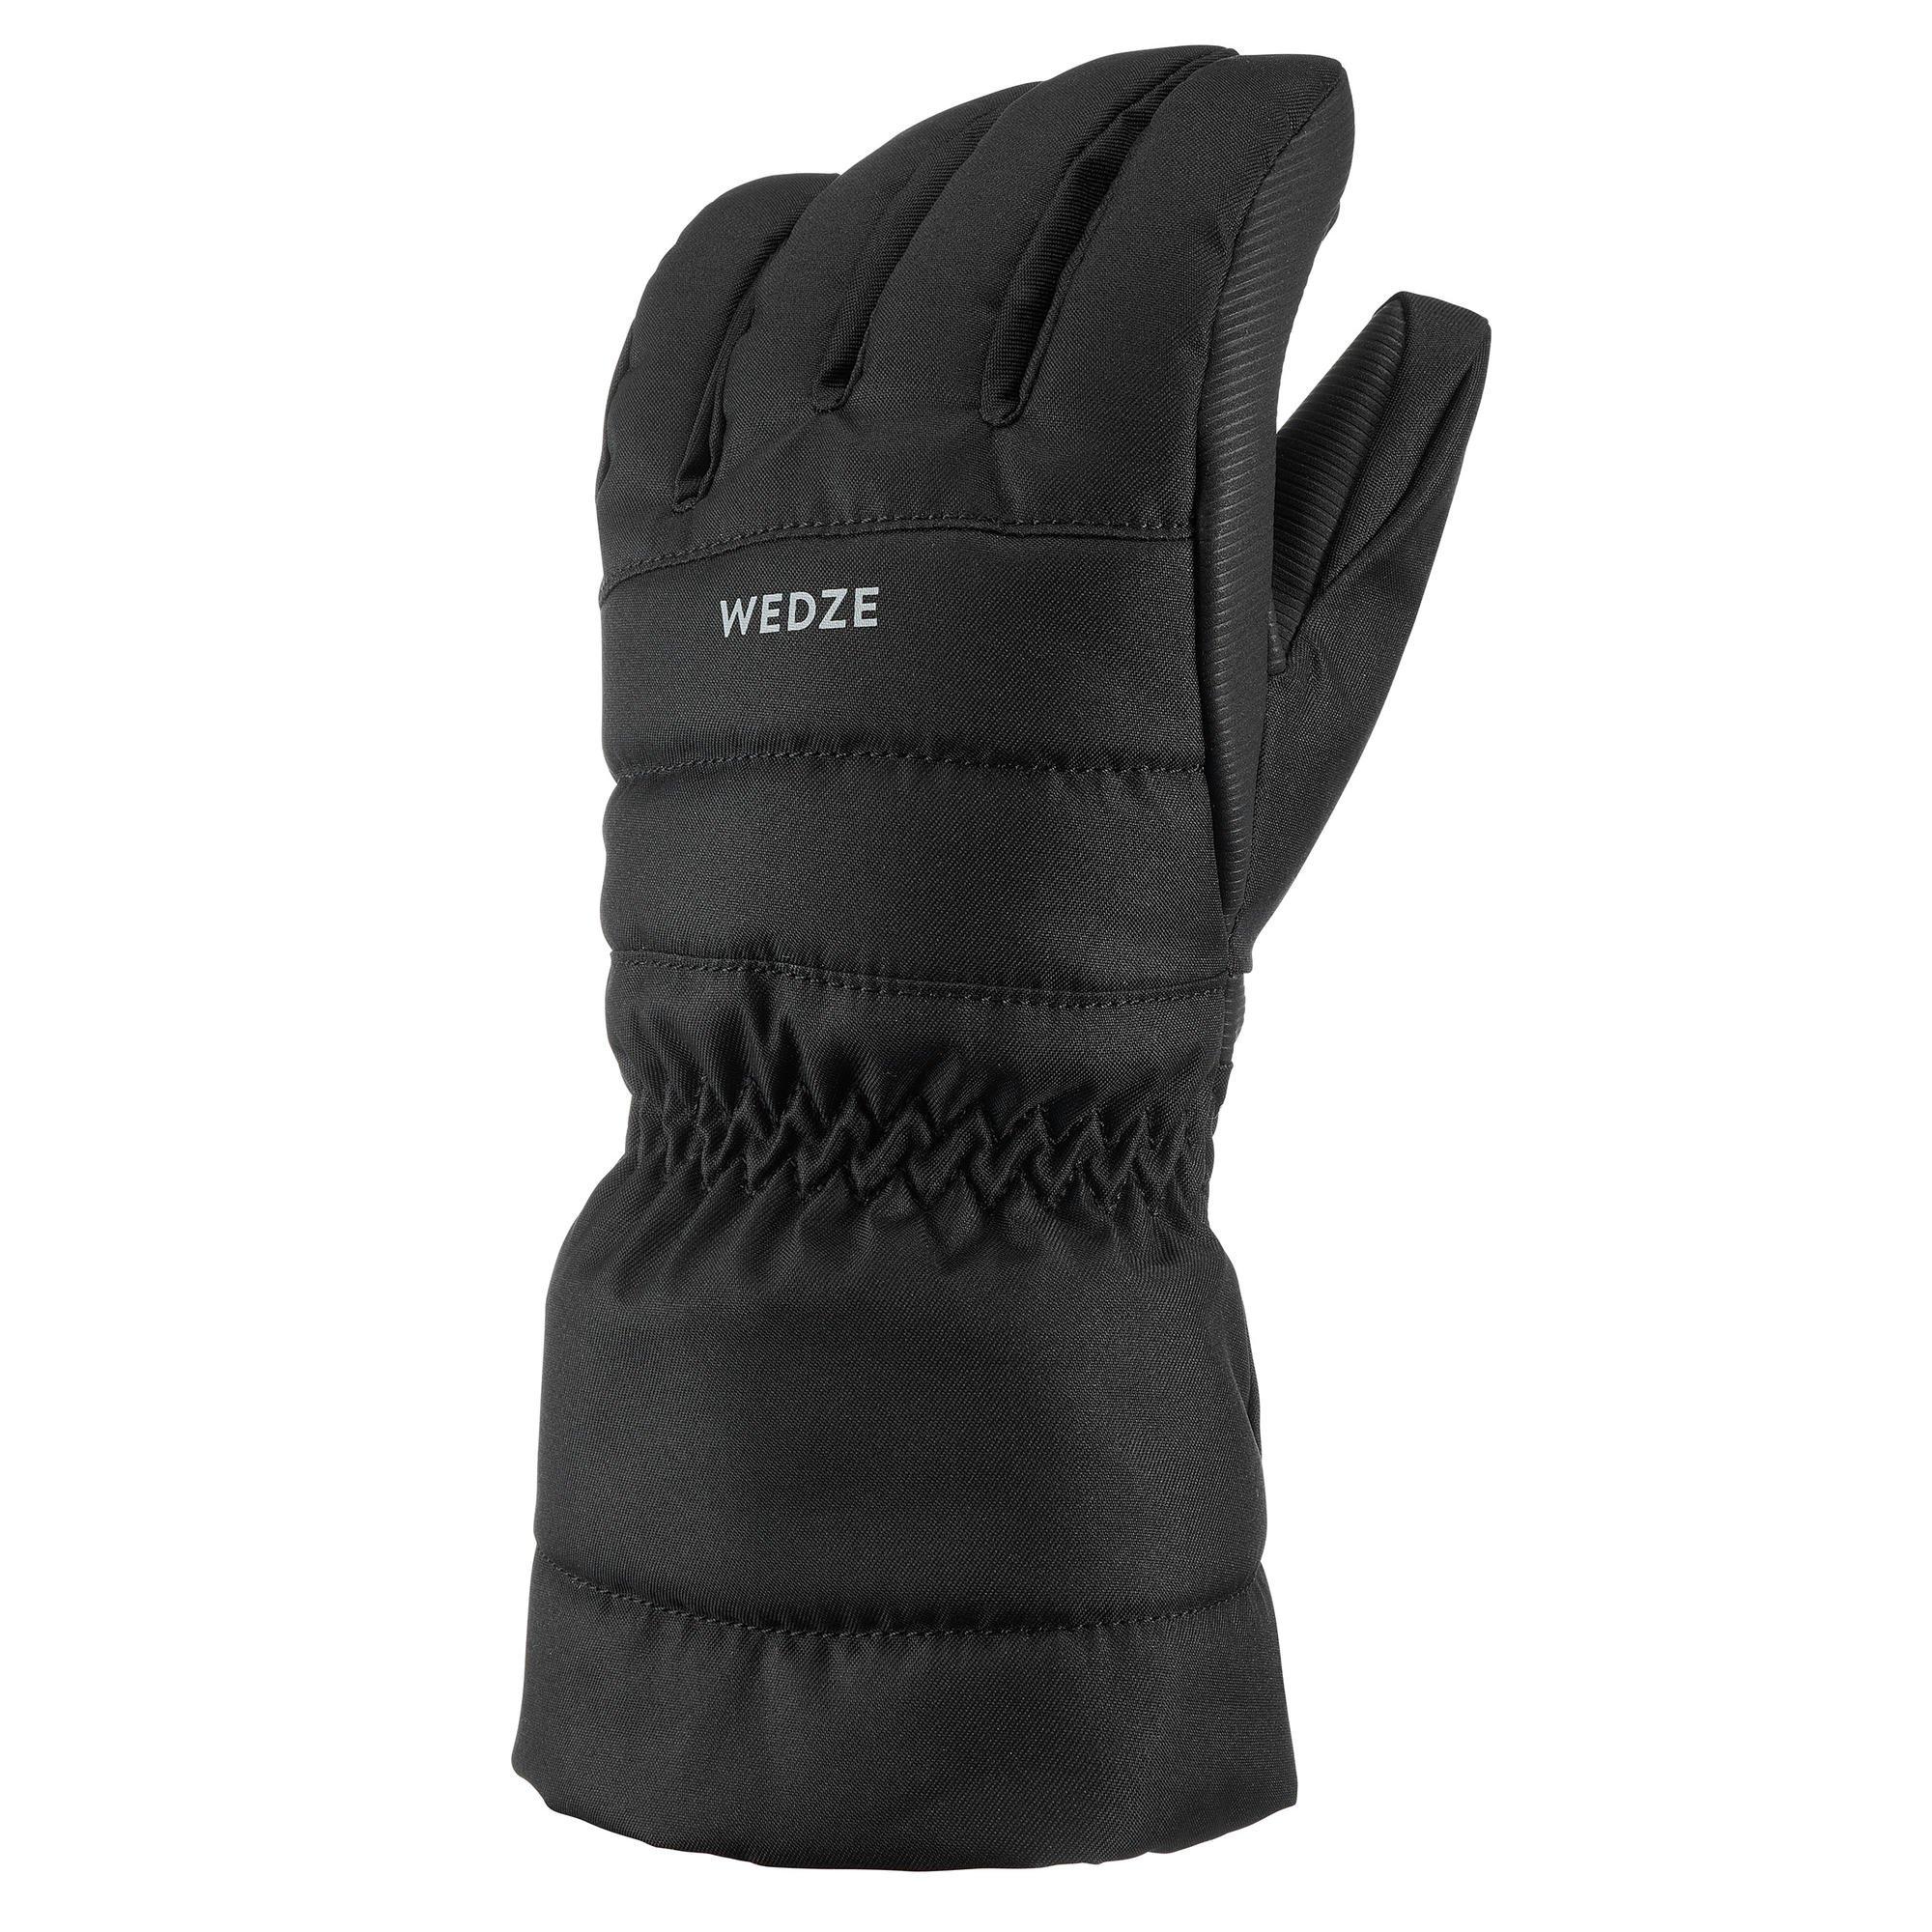 Теплые и водонепроницаемые лыжные перчатки Decathlon 500 Джинсовый Wedze, черный фото